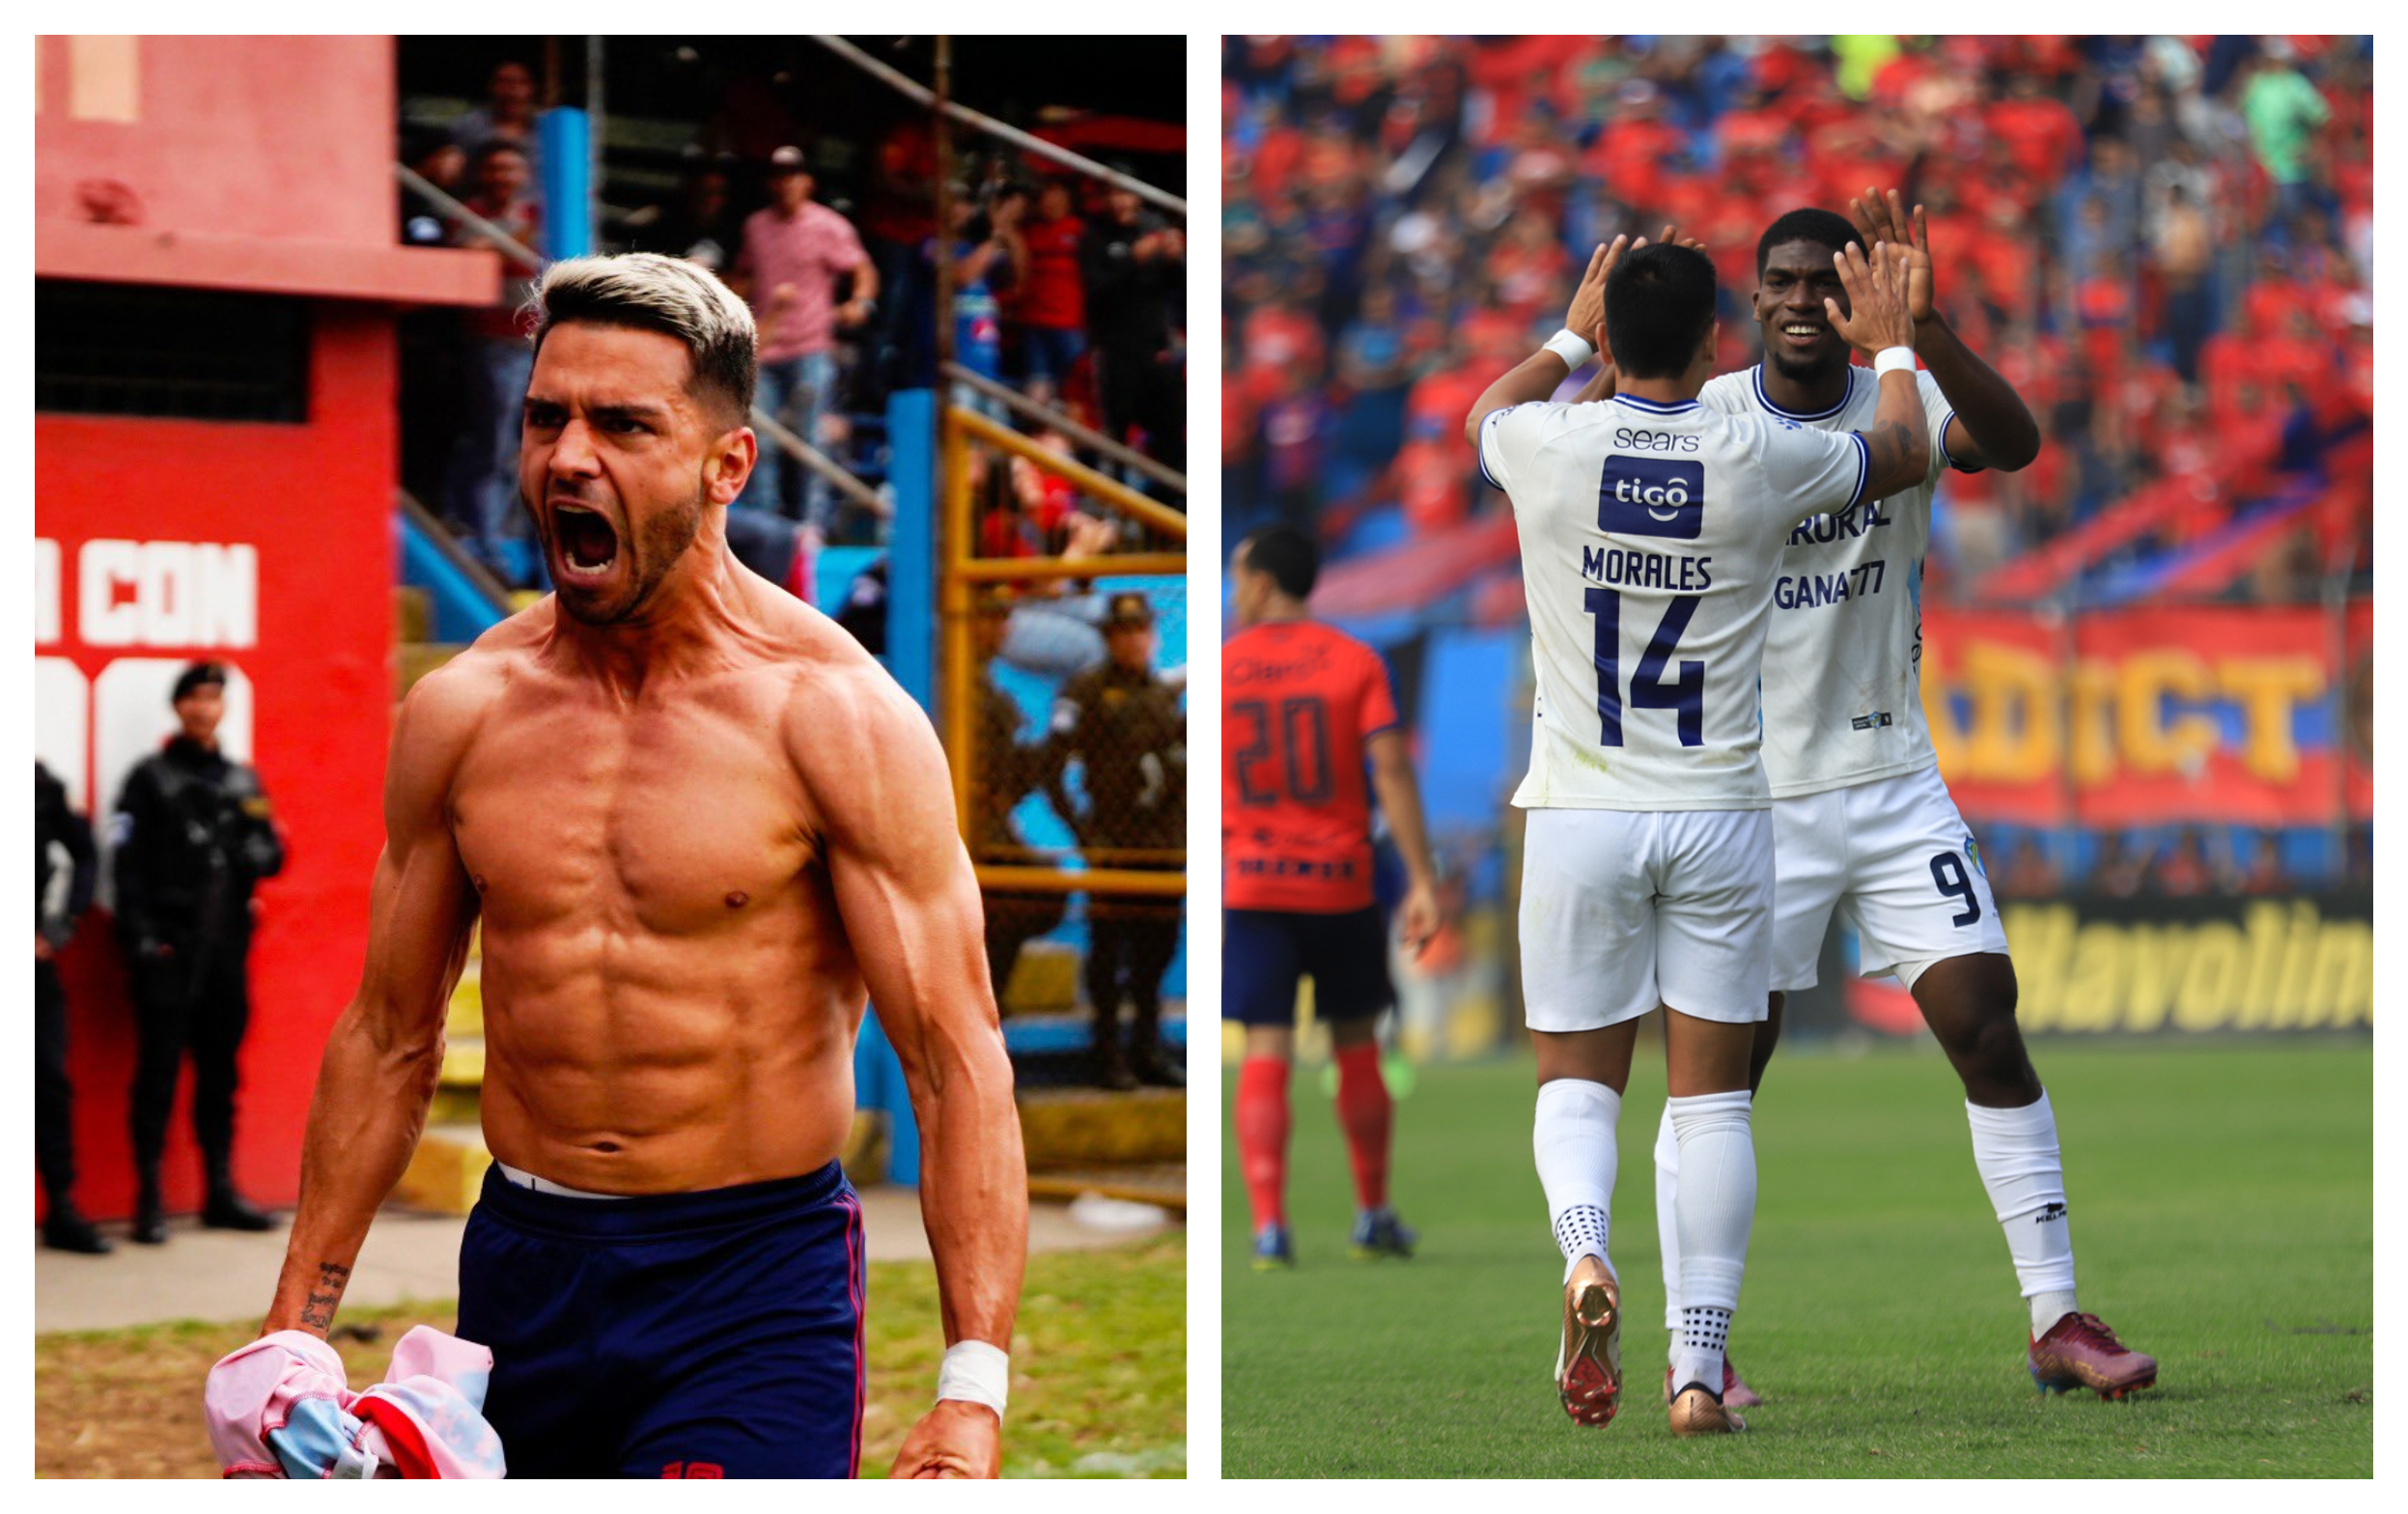 El empate 3-3 en el Clásico entre Municipal y Comunicaciones, además de la victoria de Cobán Imperial de visita a Malacateco, sobresalen de la jornada 11 del Clausura 2023. La fecha marcó el final de la primera vuelta de la fase de clasificación.